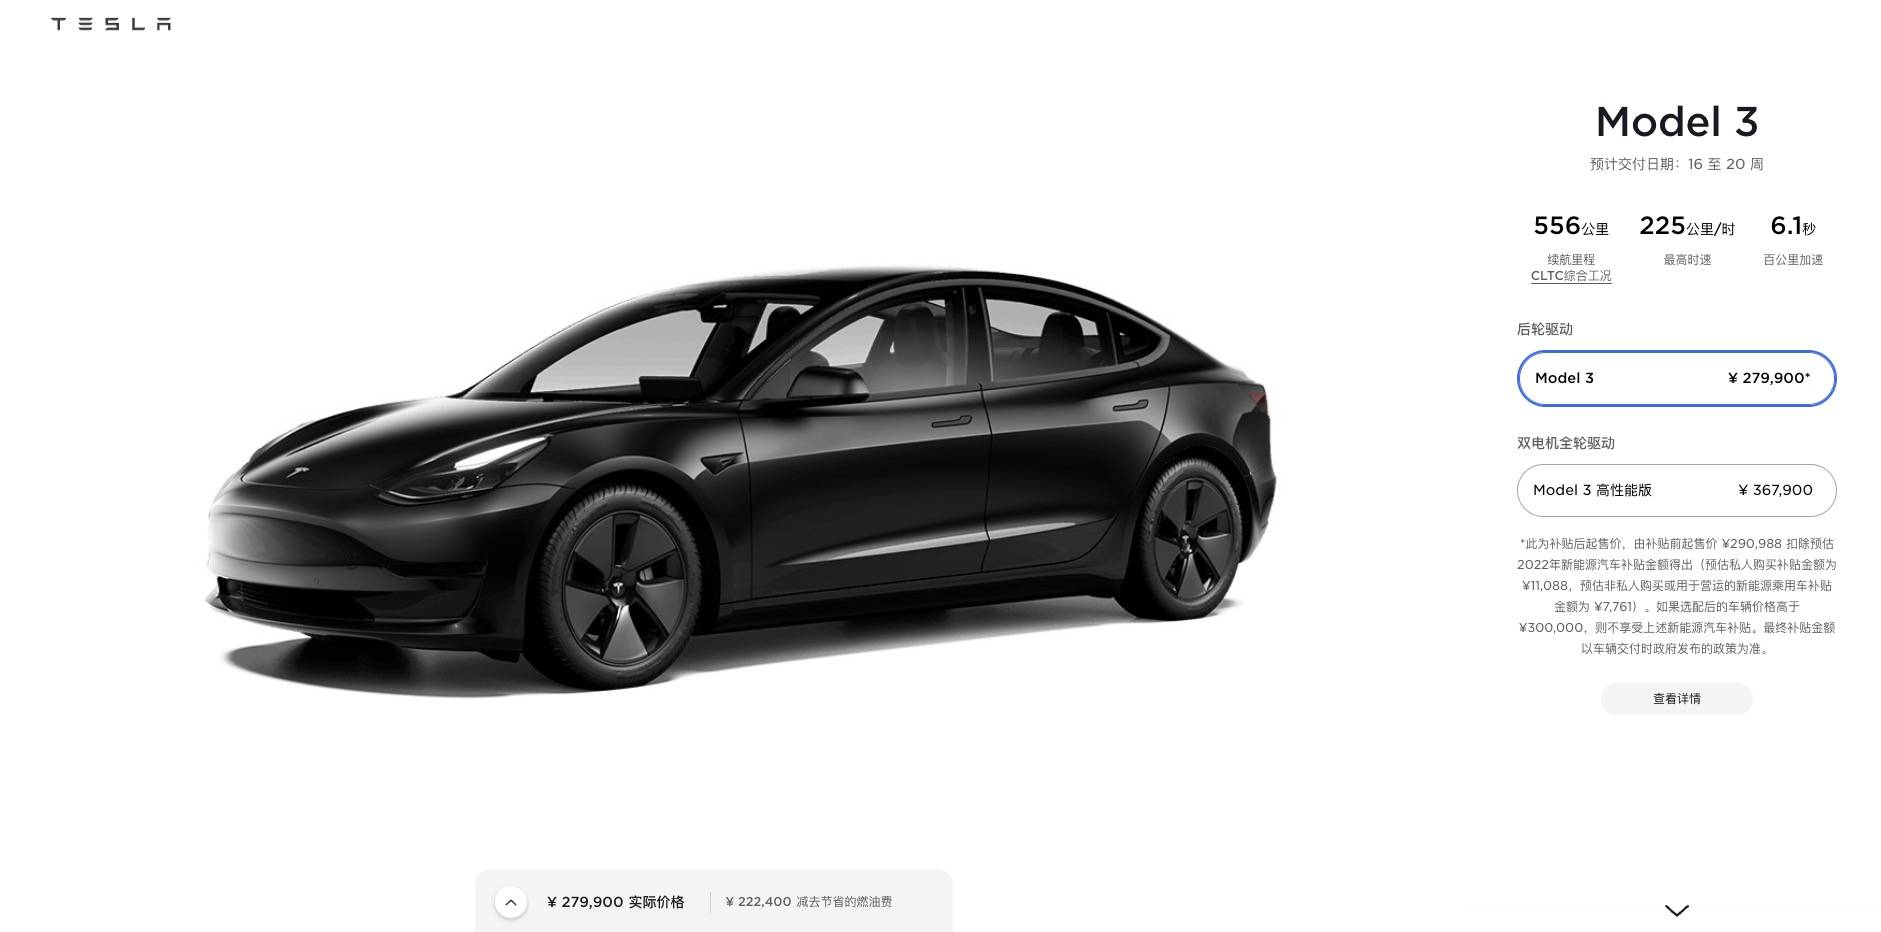 tesla1 1 - Tesla ha nuovamente alzato i prezzi, la Model Y ha superato i 400.000 / Viene rilasciata la mappa ufficiale della nuova serie Han DM / WM Motor debutta a Guangdong il 15 marzo